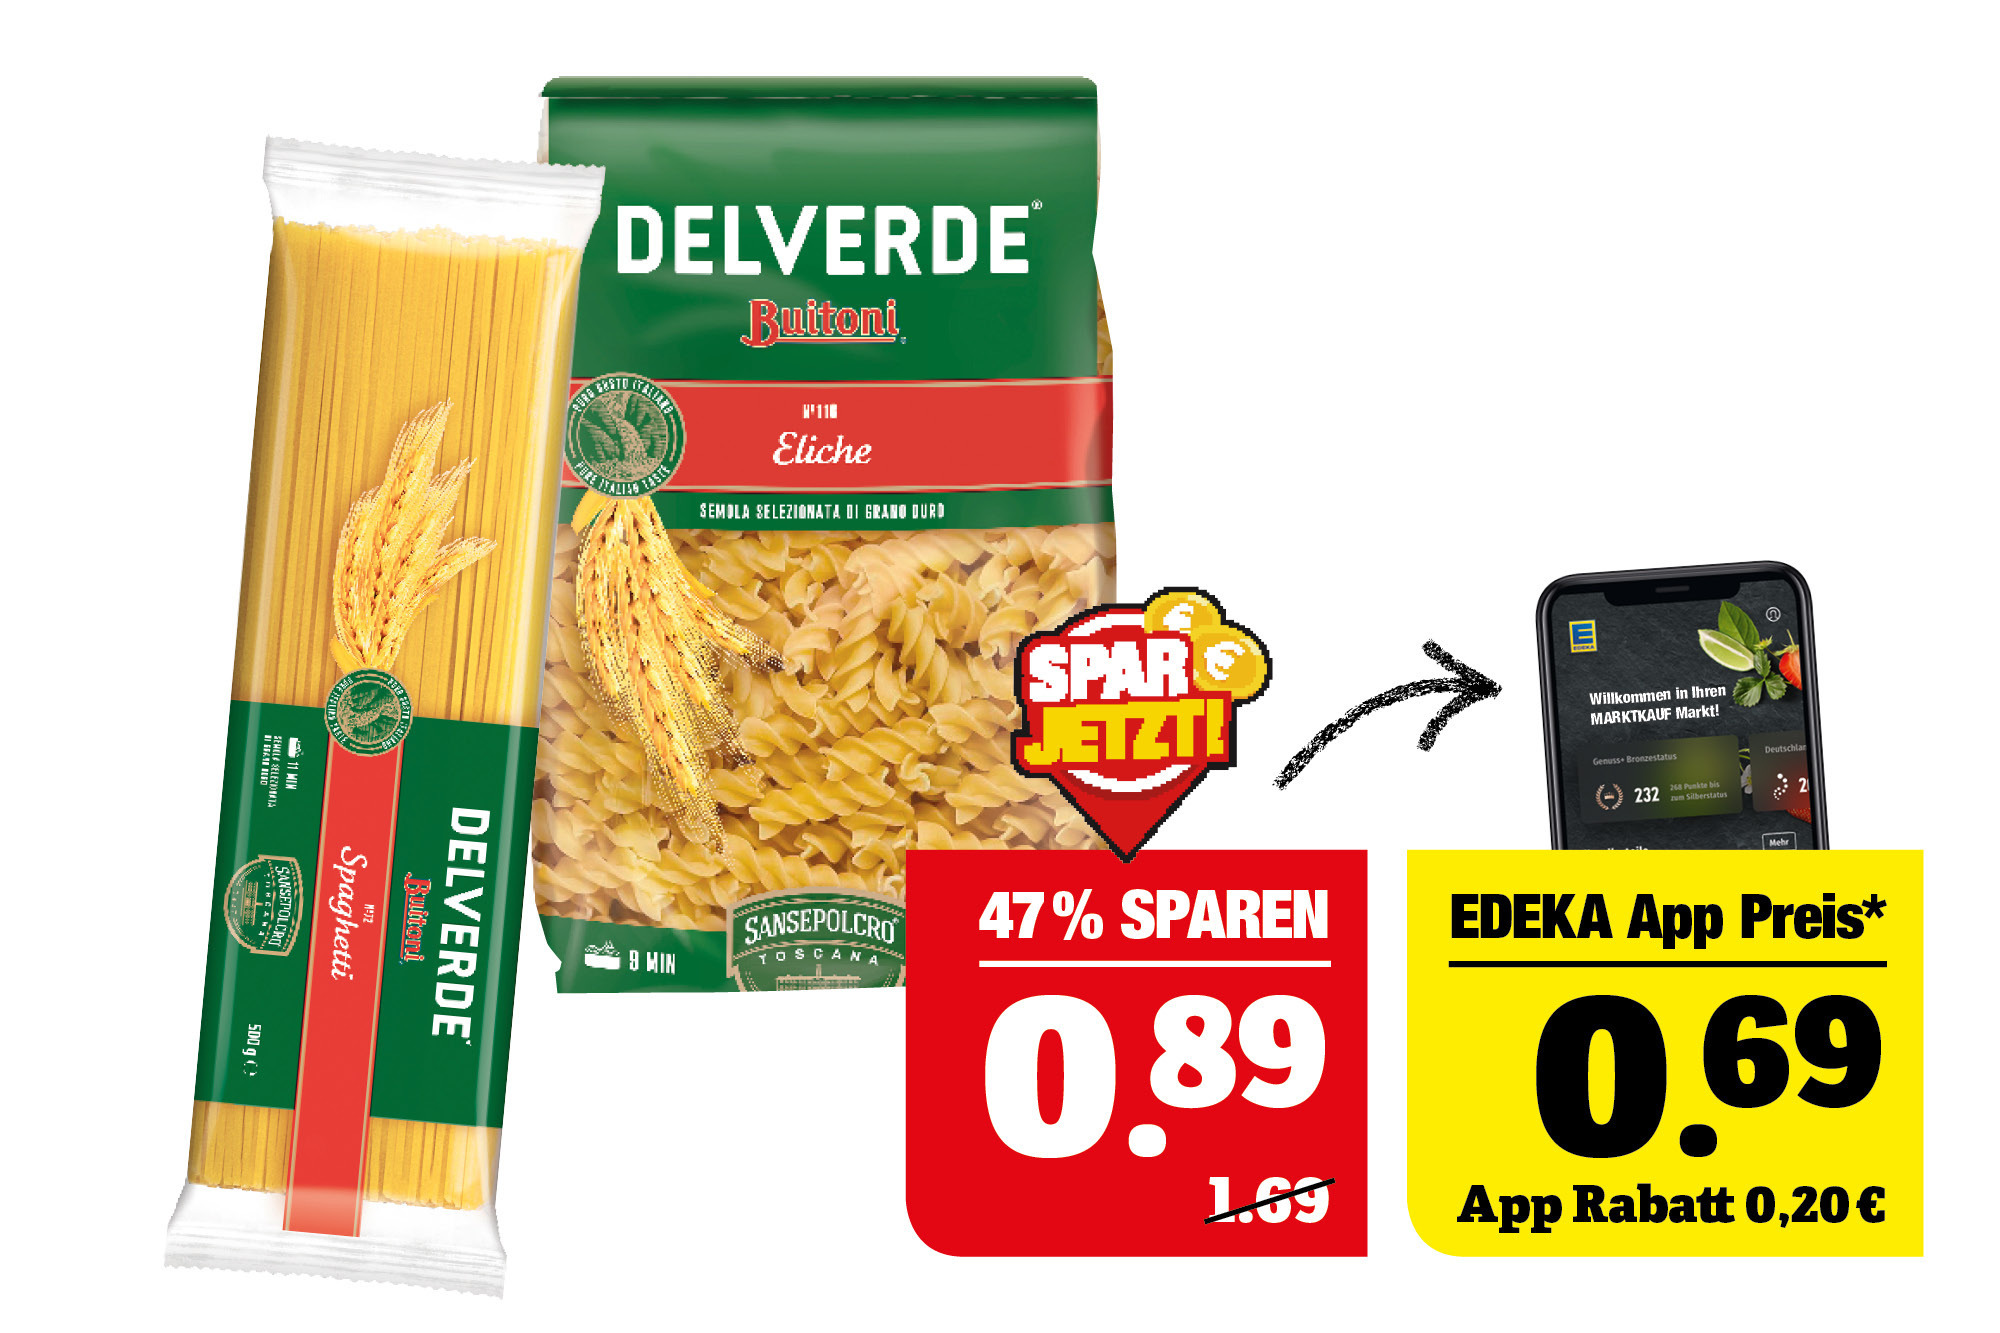 Delverde‍ ‍Buitoni italienische Pasta - verschiedene Ausformungen; 500 g Packung; 1 kg = 1,78; Ausgenommen Lasagne.